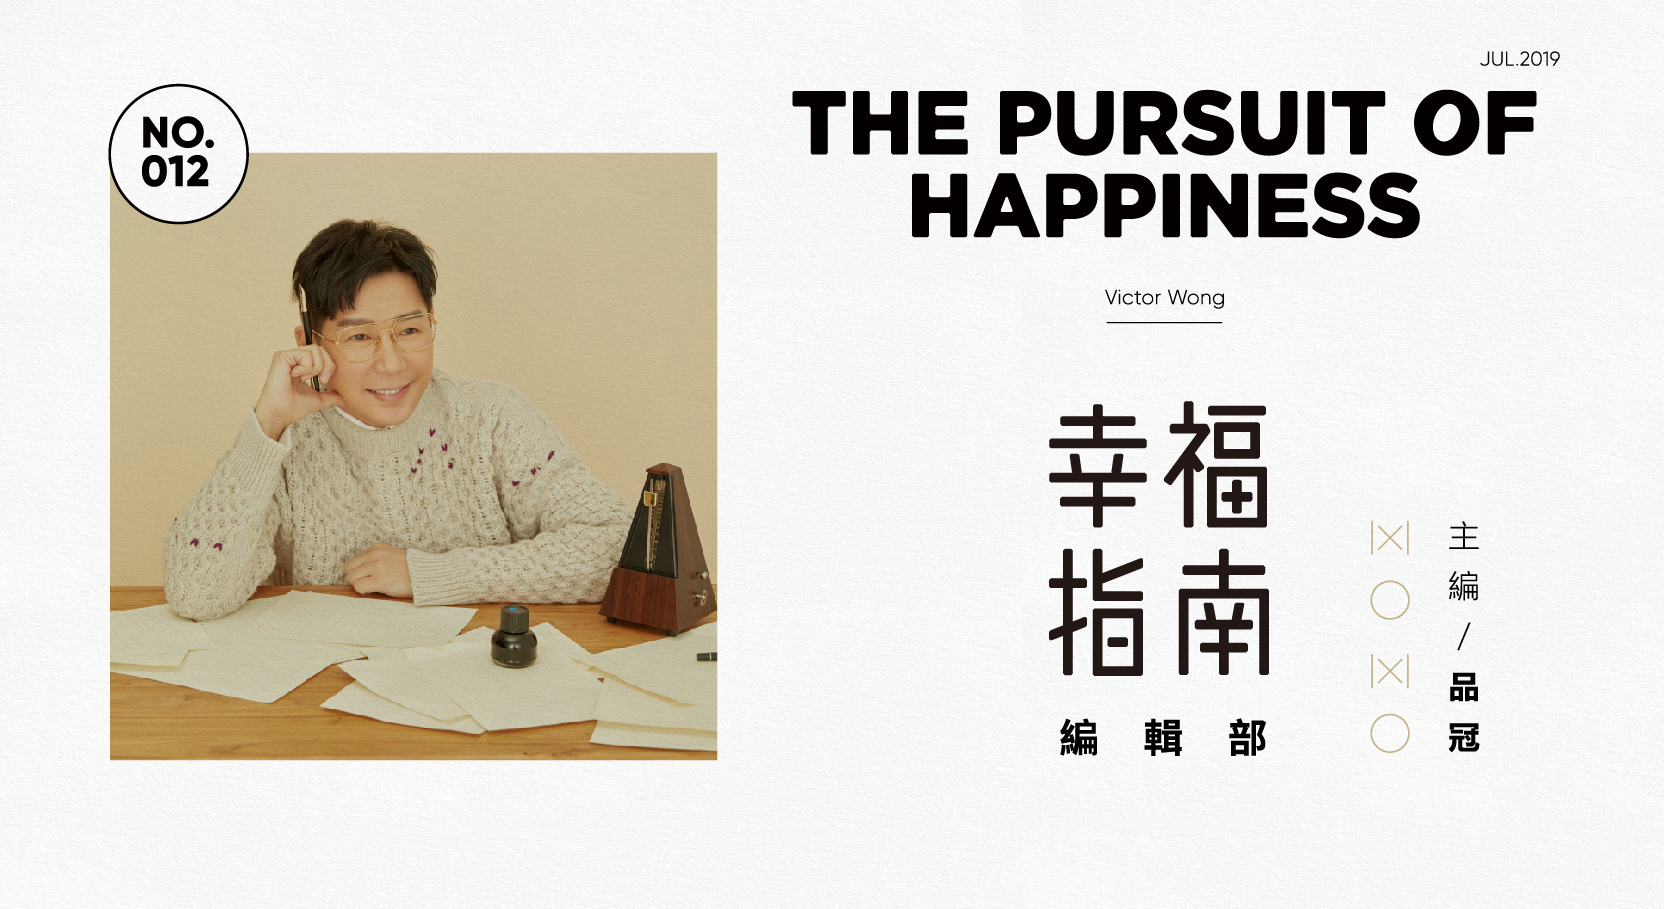 品冠概念專輯《幸福指南編輯部》 打造10首精選幸福主題歌單